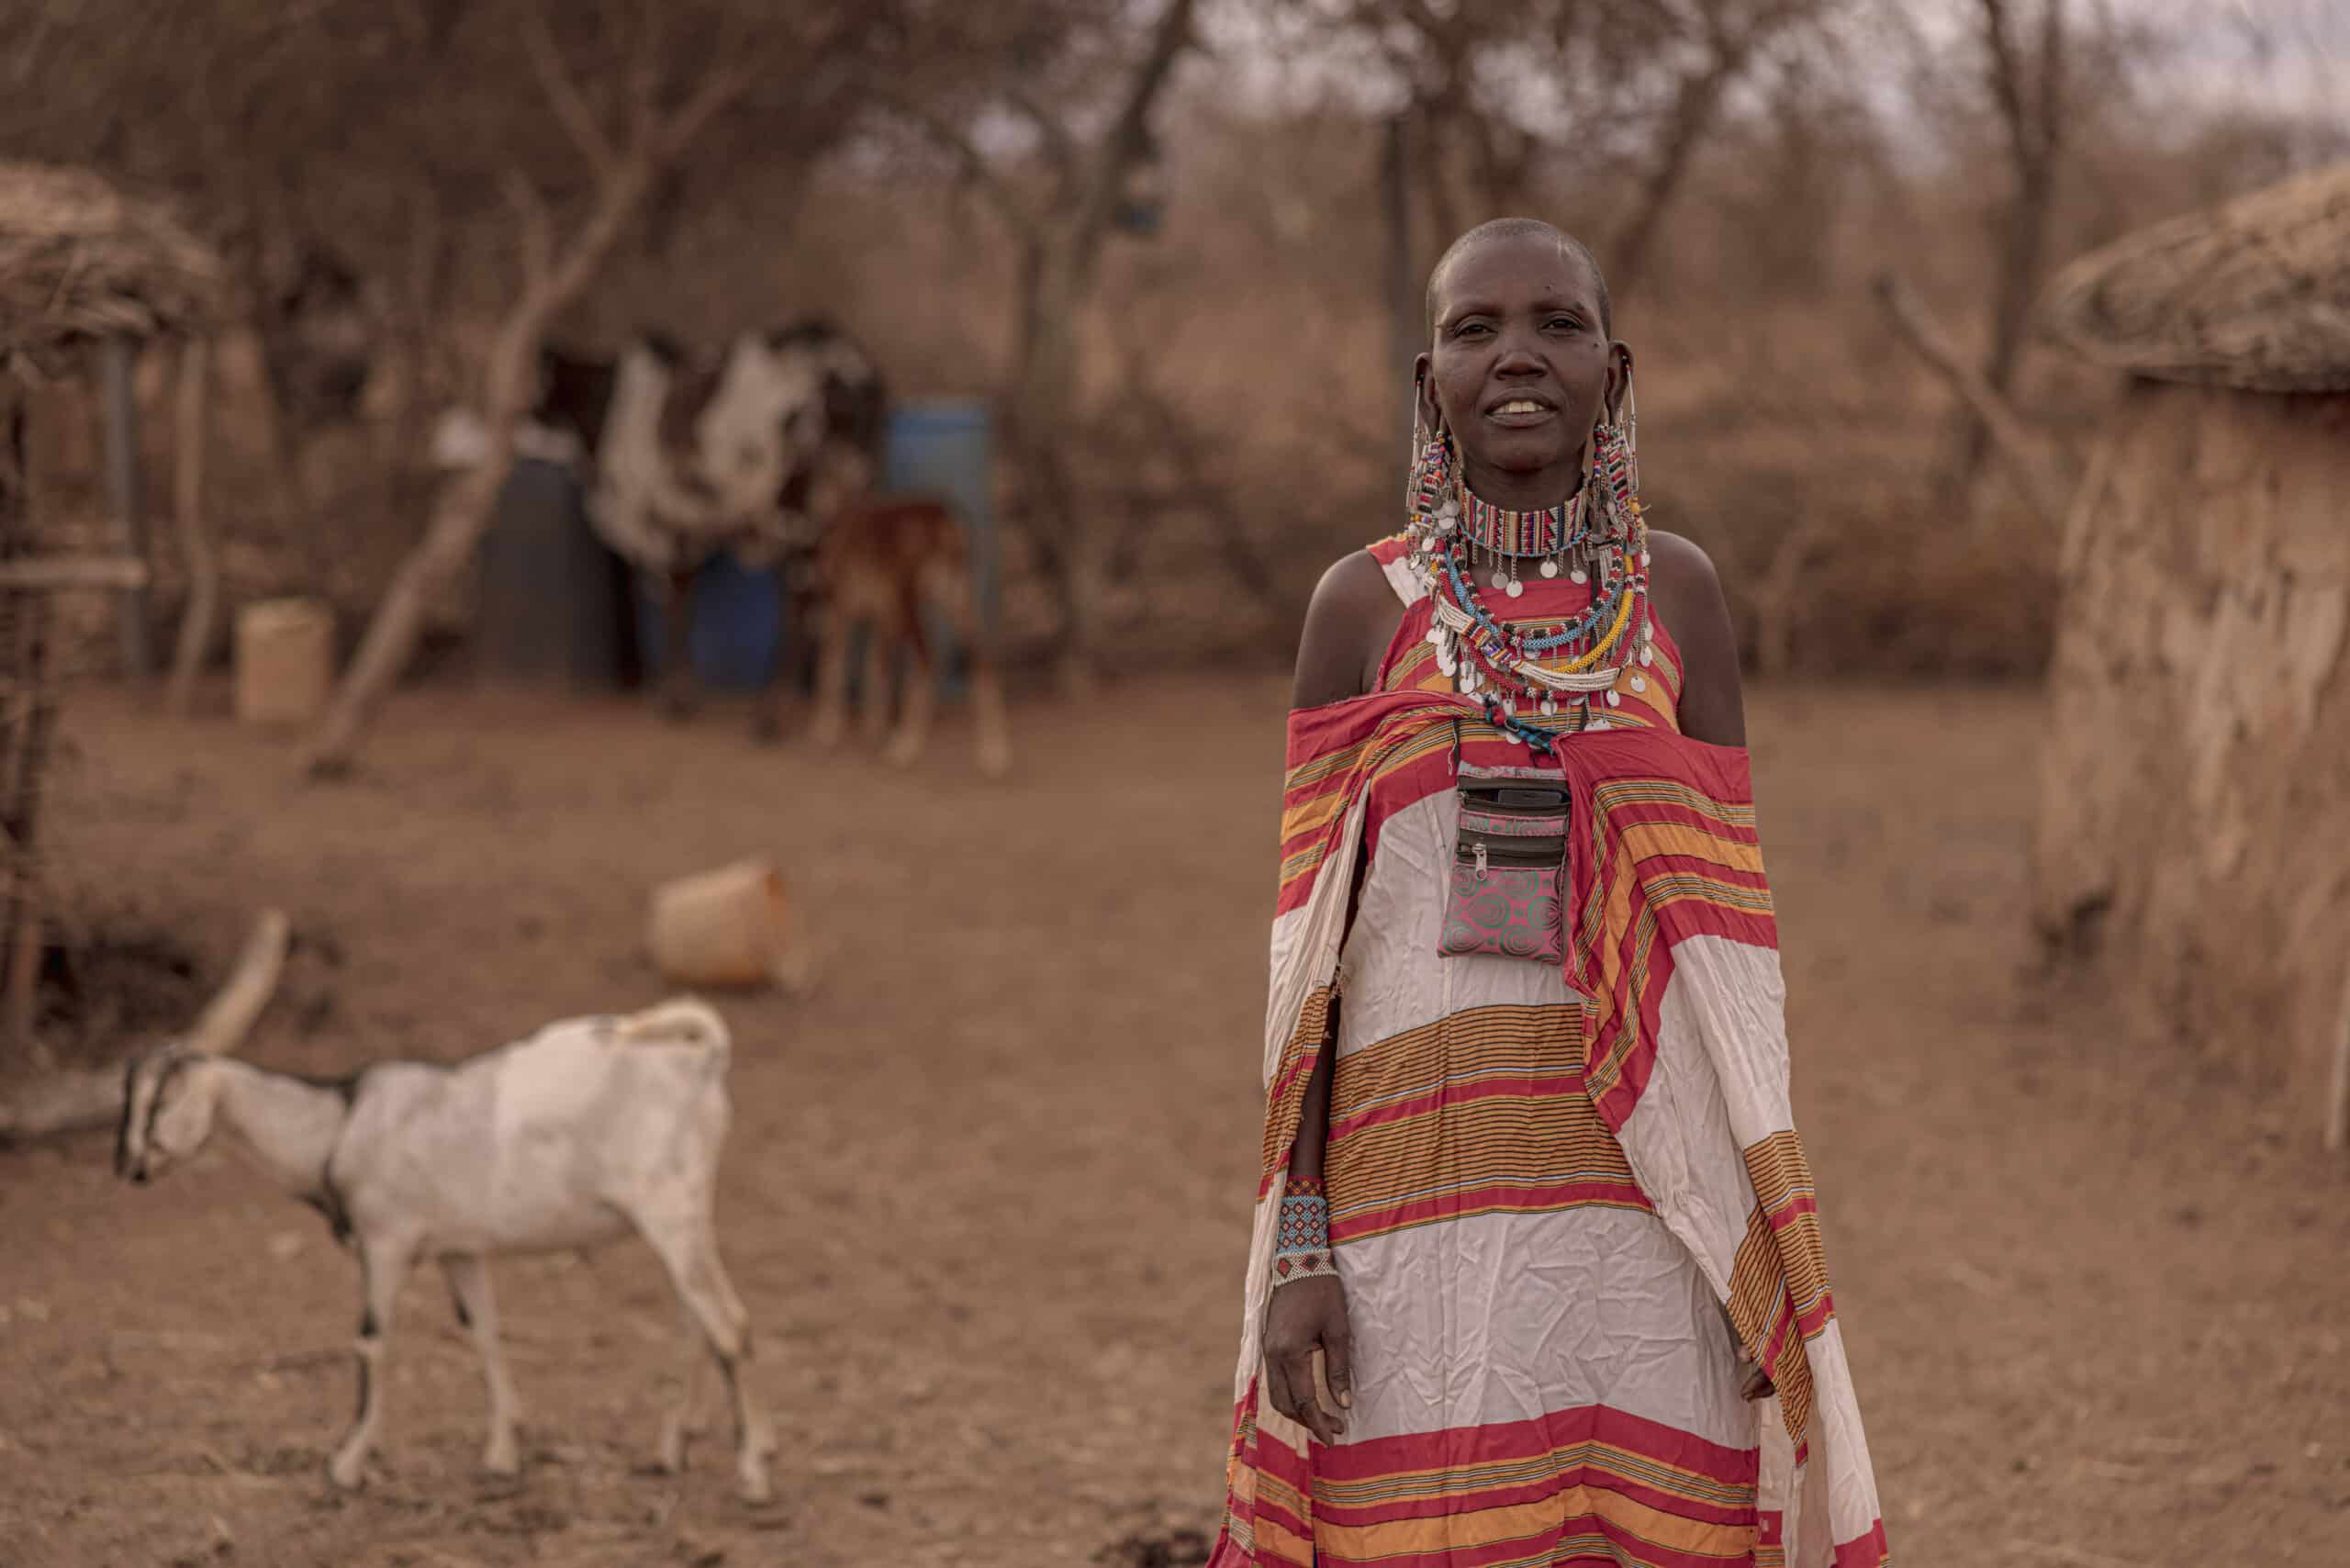 Eine Massai-Frau in traditioneller Kleidung steht in einem Dorf. Im Hintergrund sind Hütten und eine Ziege zu sehen, was eine heitere, ländliche Umgebung darstellt. © Fotografie Tomas Rodriguez